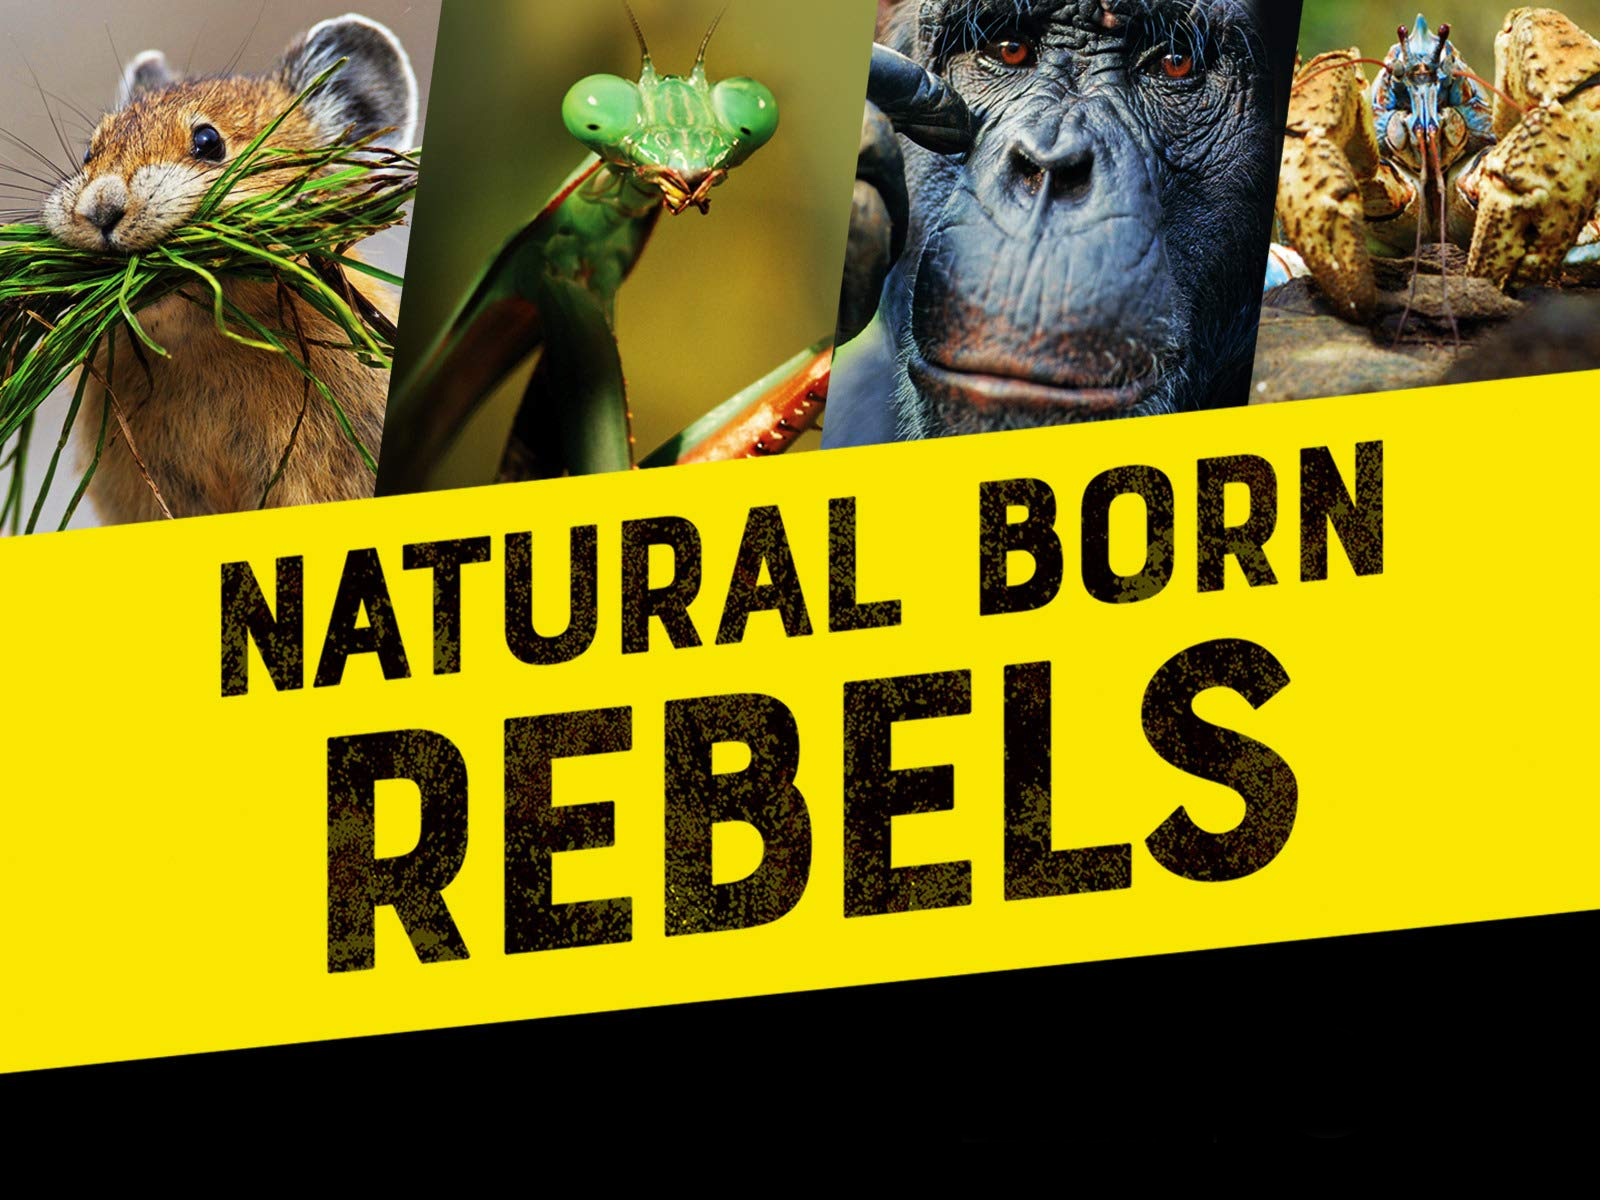 Caratula de Natural Born Rebels (Animales rebeldes) 